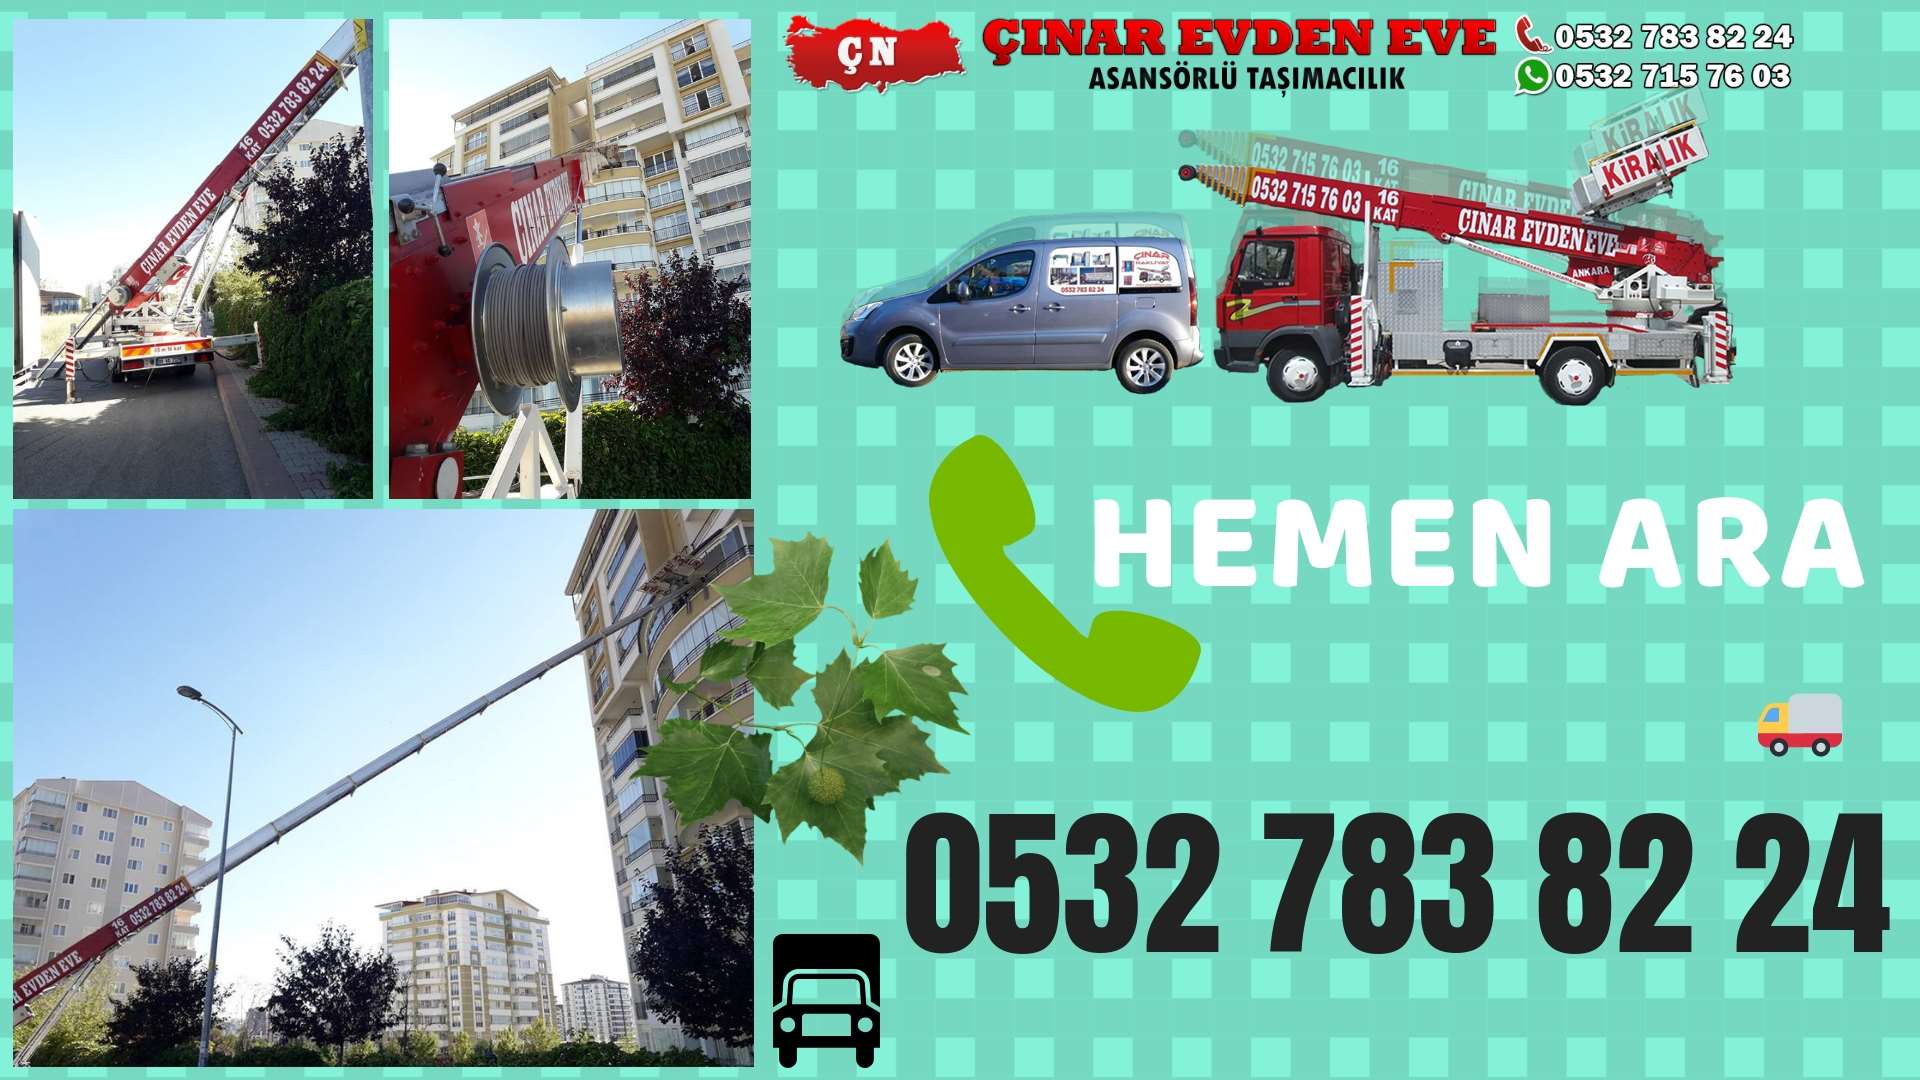 Ankara Polatlı Evden eve ev taşıma sincan nakliye fiyatları 0532 715 76 03